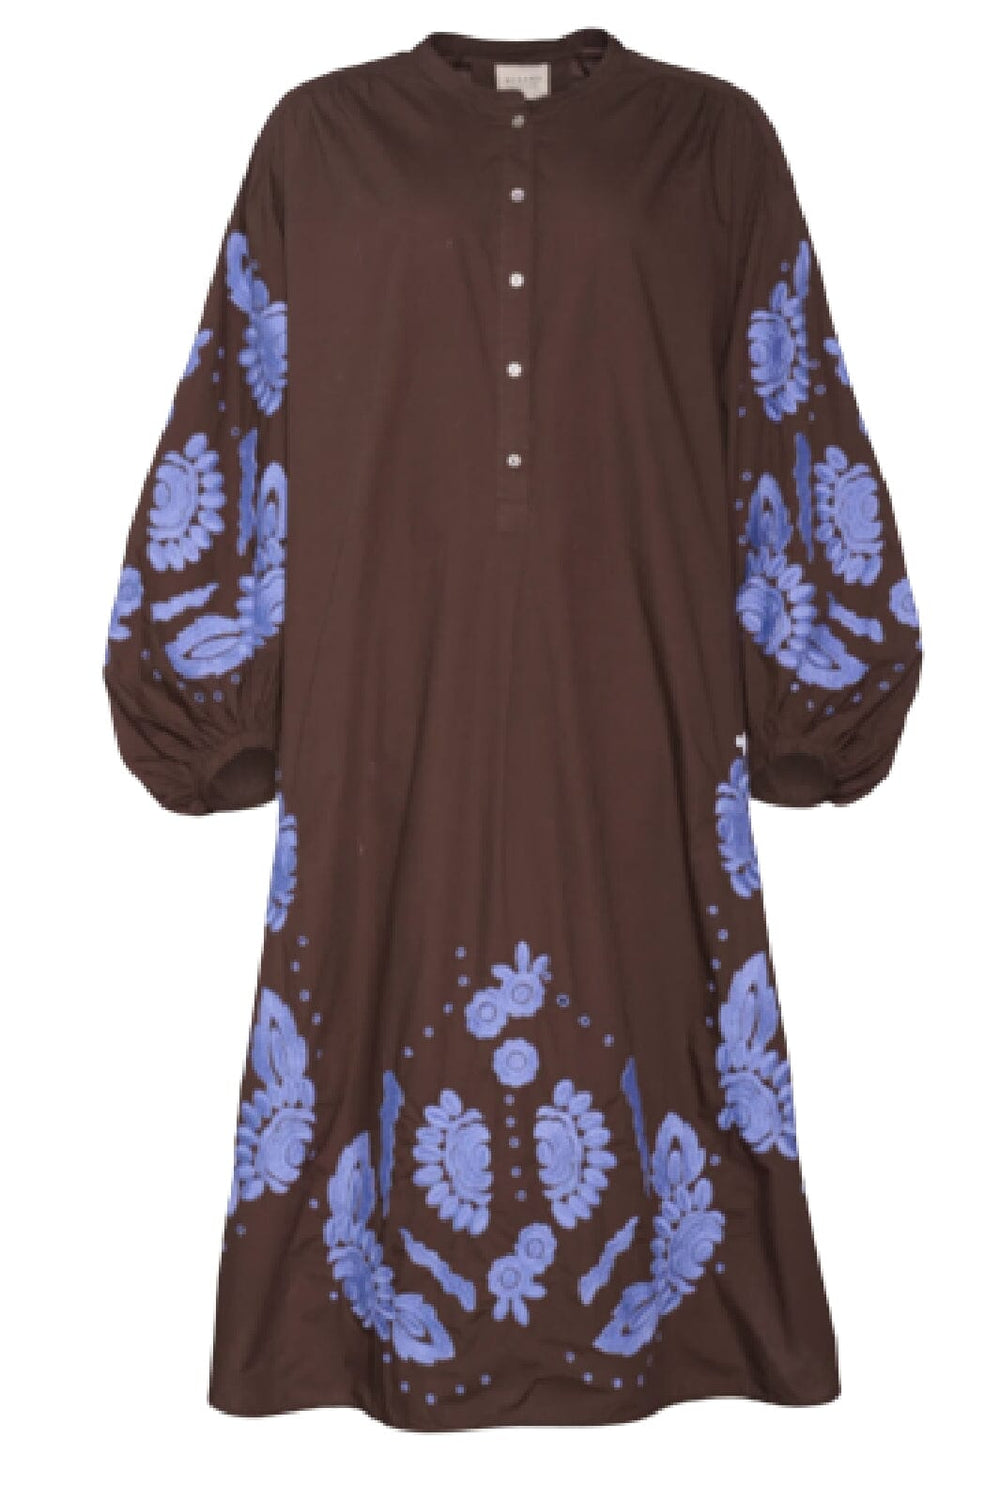 Sissel Edelbo - Rikke Organic Cotton Shirt Dress - Chestnut Kjoler 